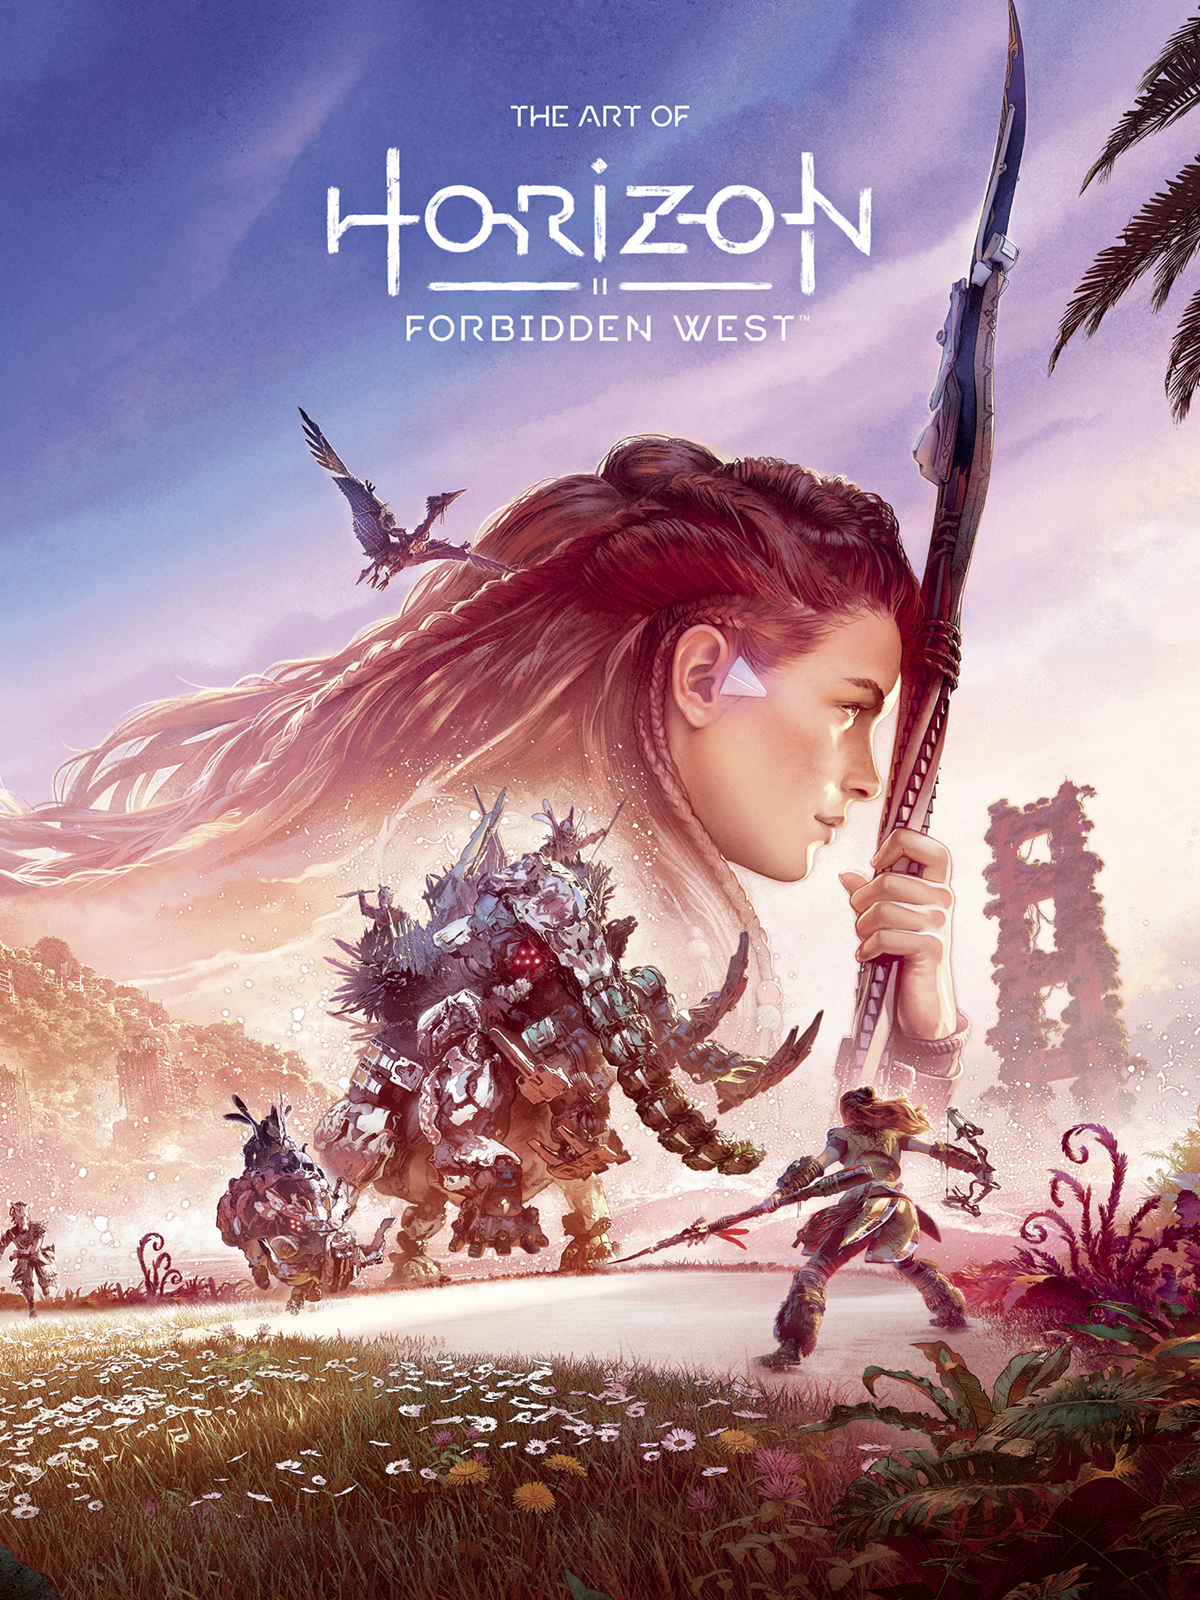 Art of Horizon Forbidden West Hardcover